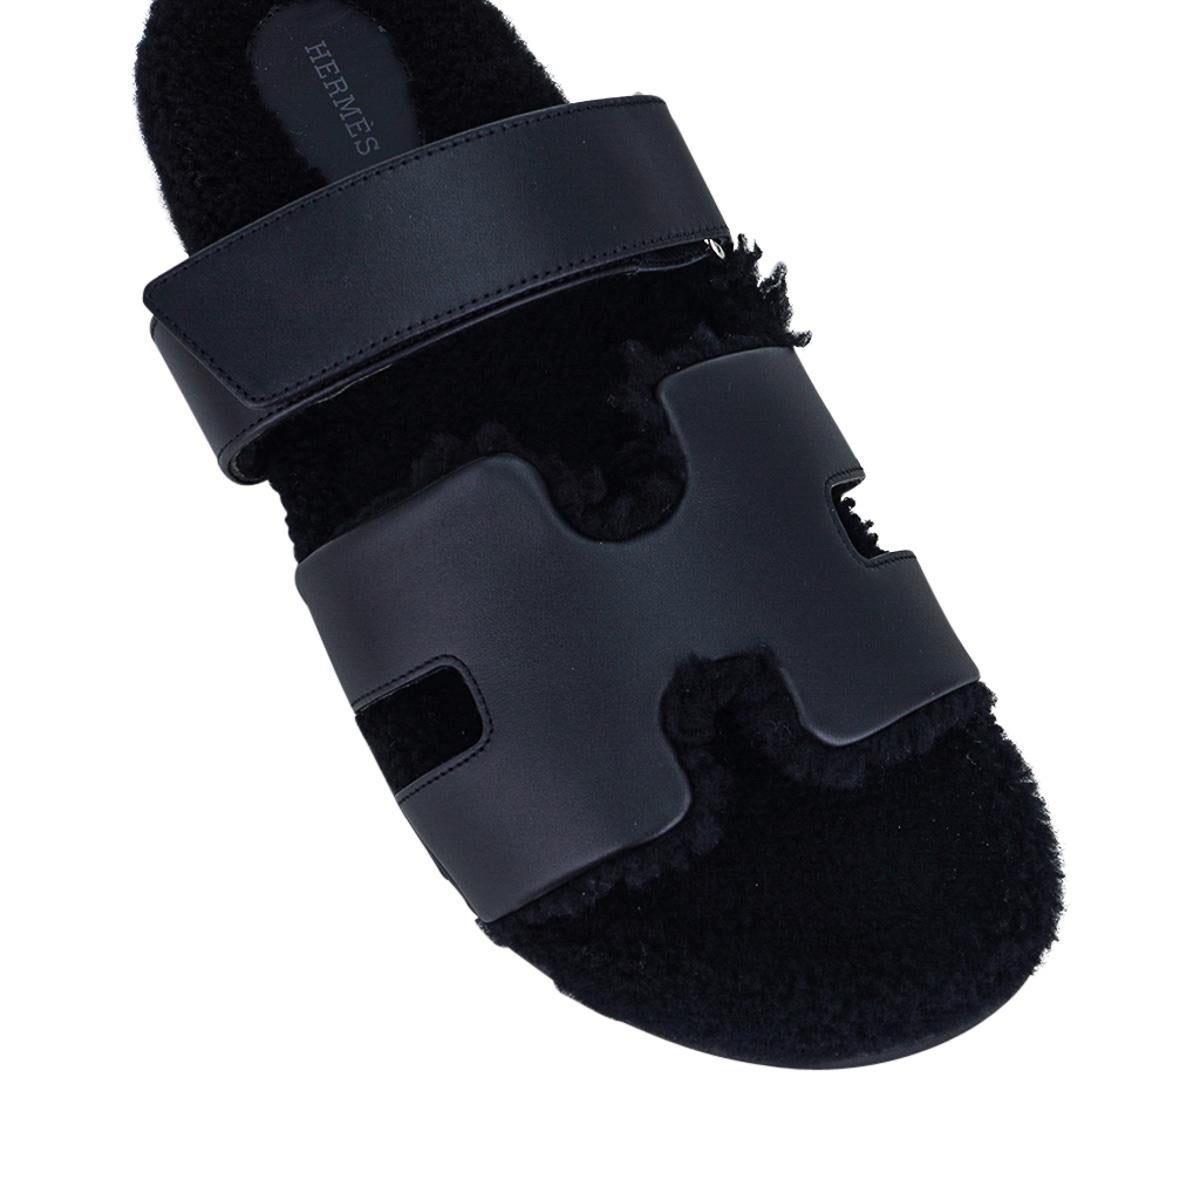 Mightychic propose une paire de sandales Hermès homme en édition limitée, en veau Black Chypre et en peau de laine Veau Indios.
L'emblématique H découpé sur le dessus du pied en cuir de veau.  avec semelle intérieure en shearling noir et semelle en